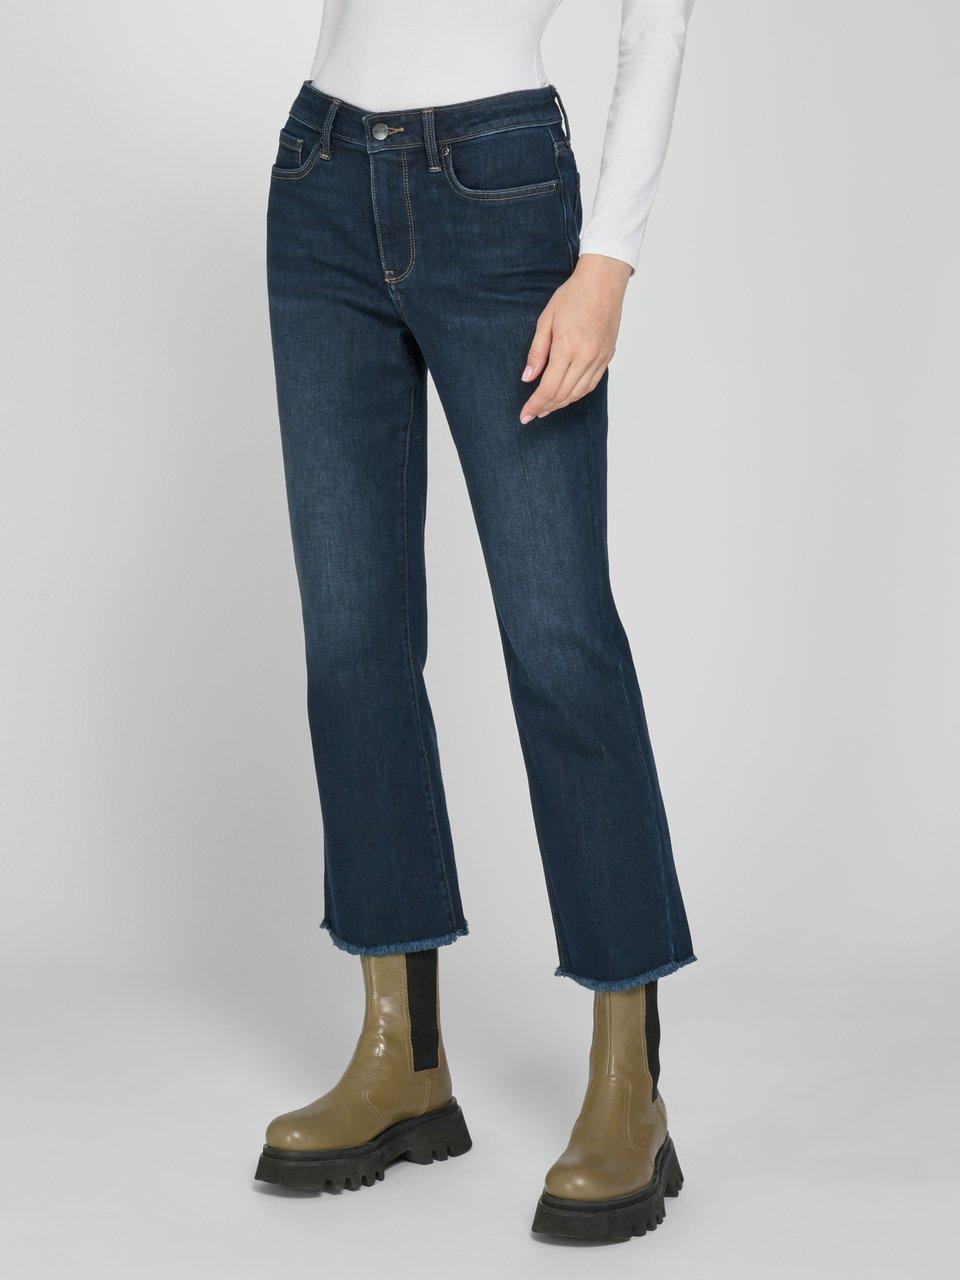 NYDJ – die revolutionäre, schlankmachende Jeans für Damen